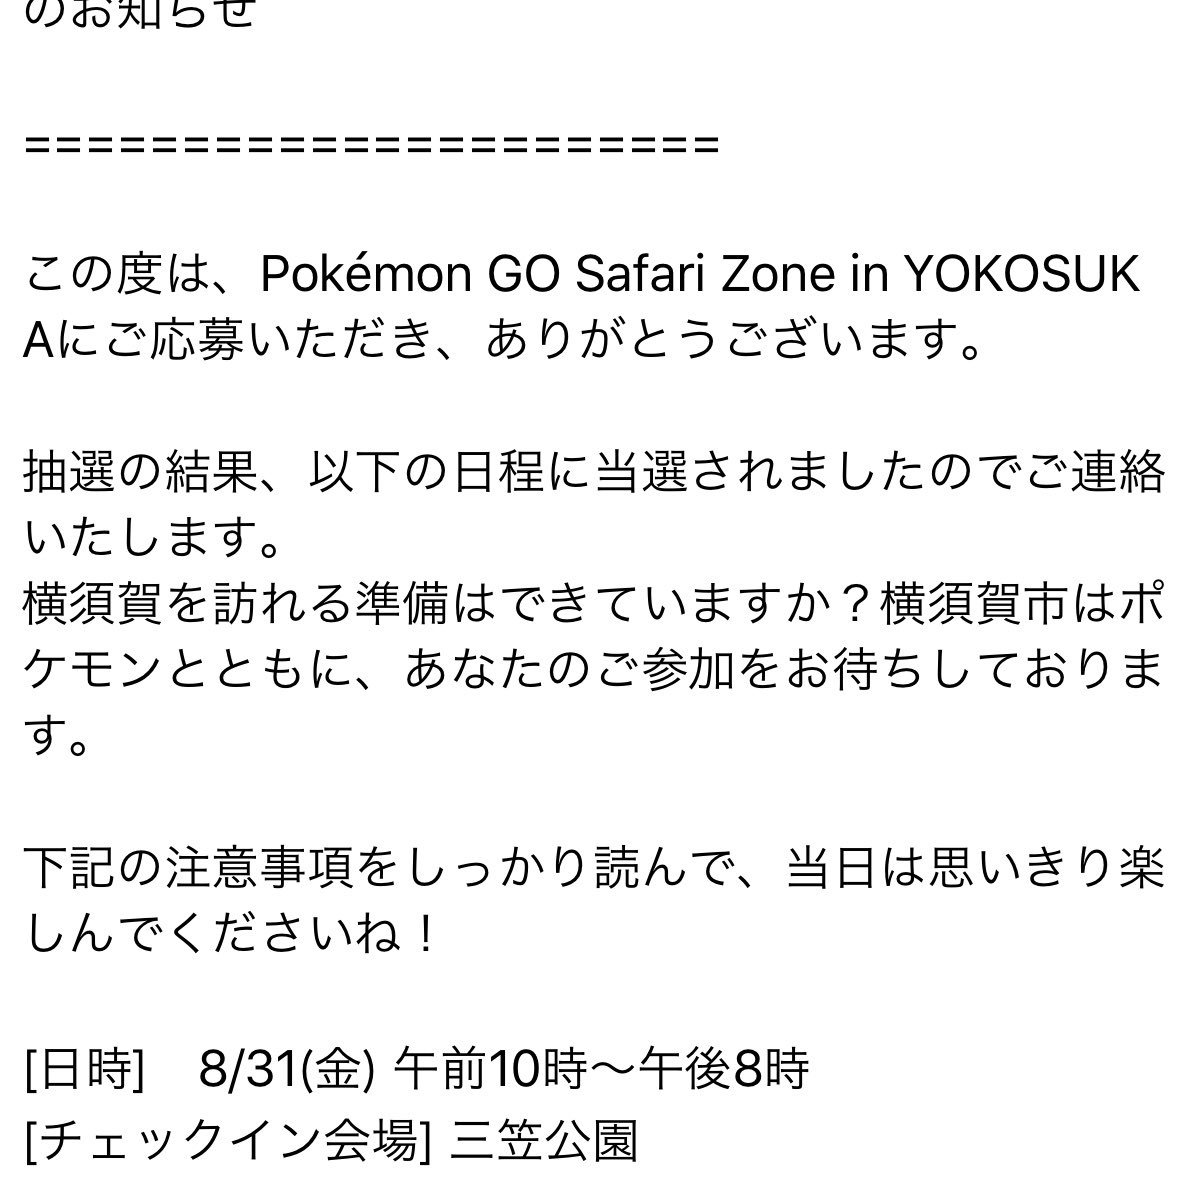 ポケモンgo 横須賀イベントの未当選者にも落選メール送って欲しいよな ポケモンgo攻略まとめ速報